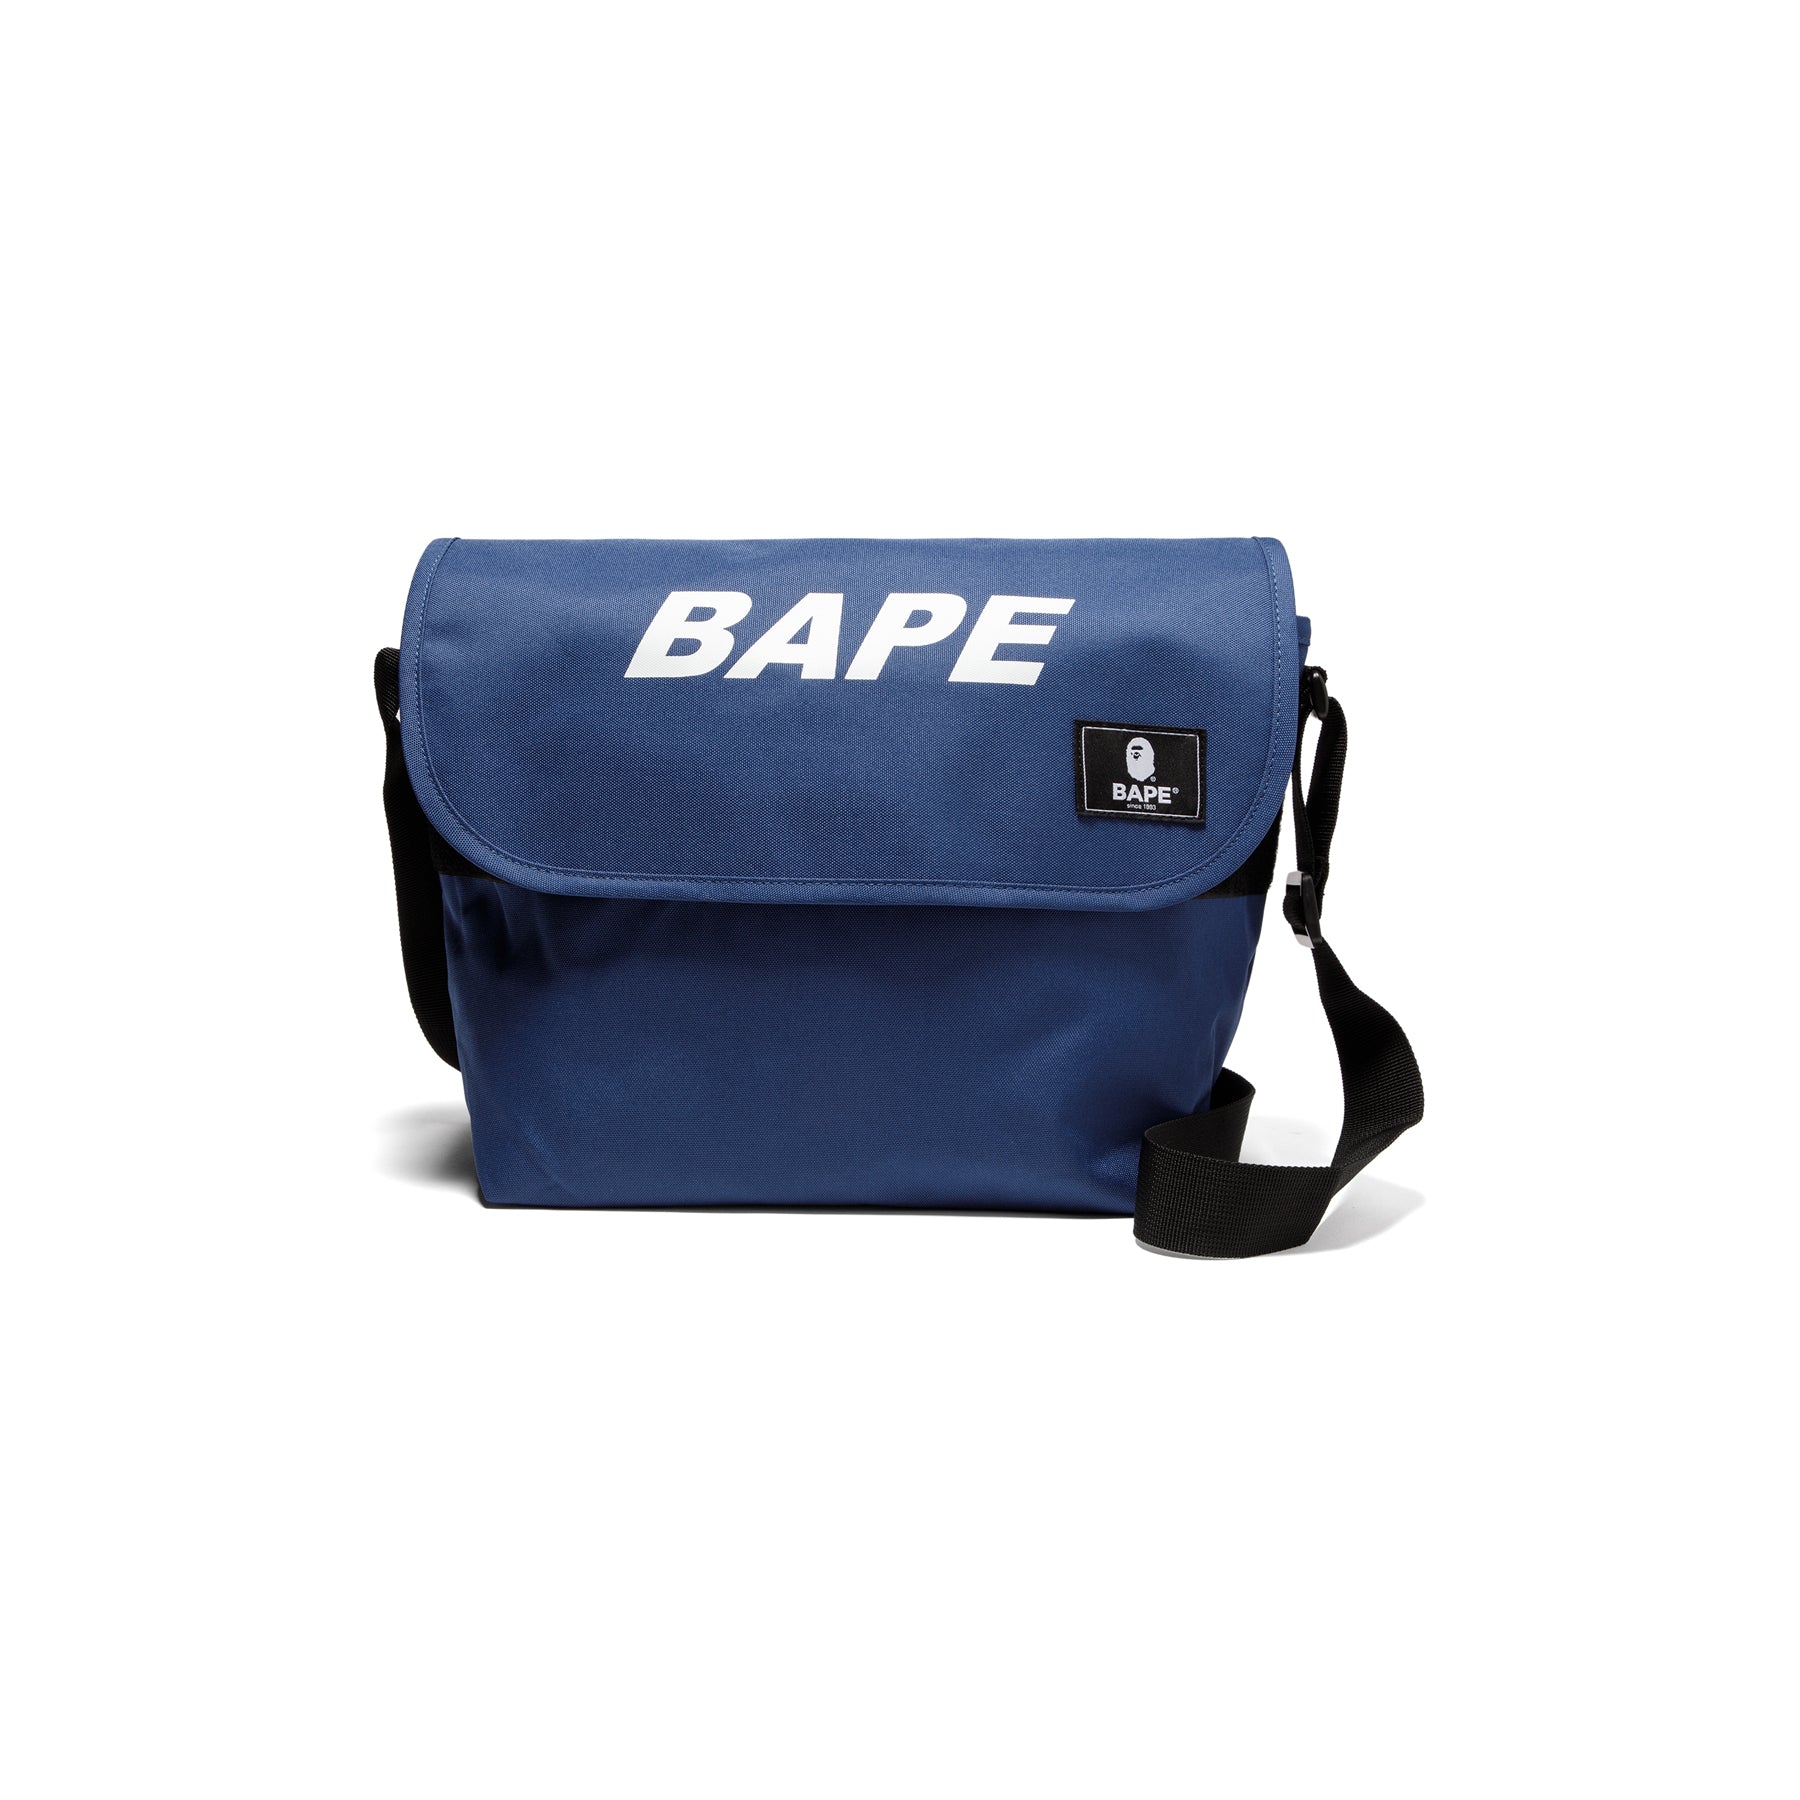 Bape bags for Men